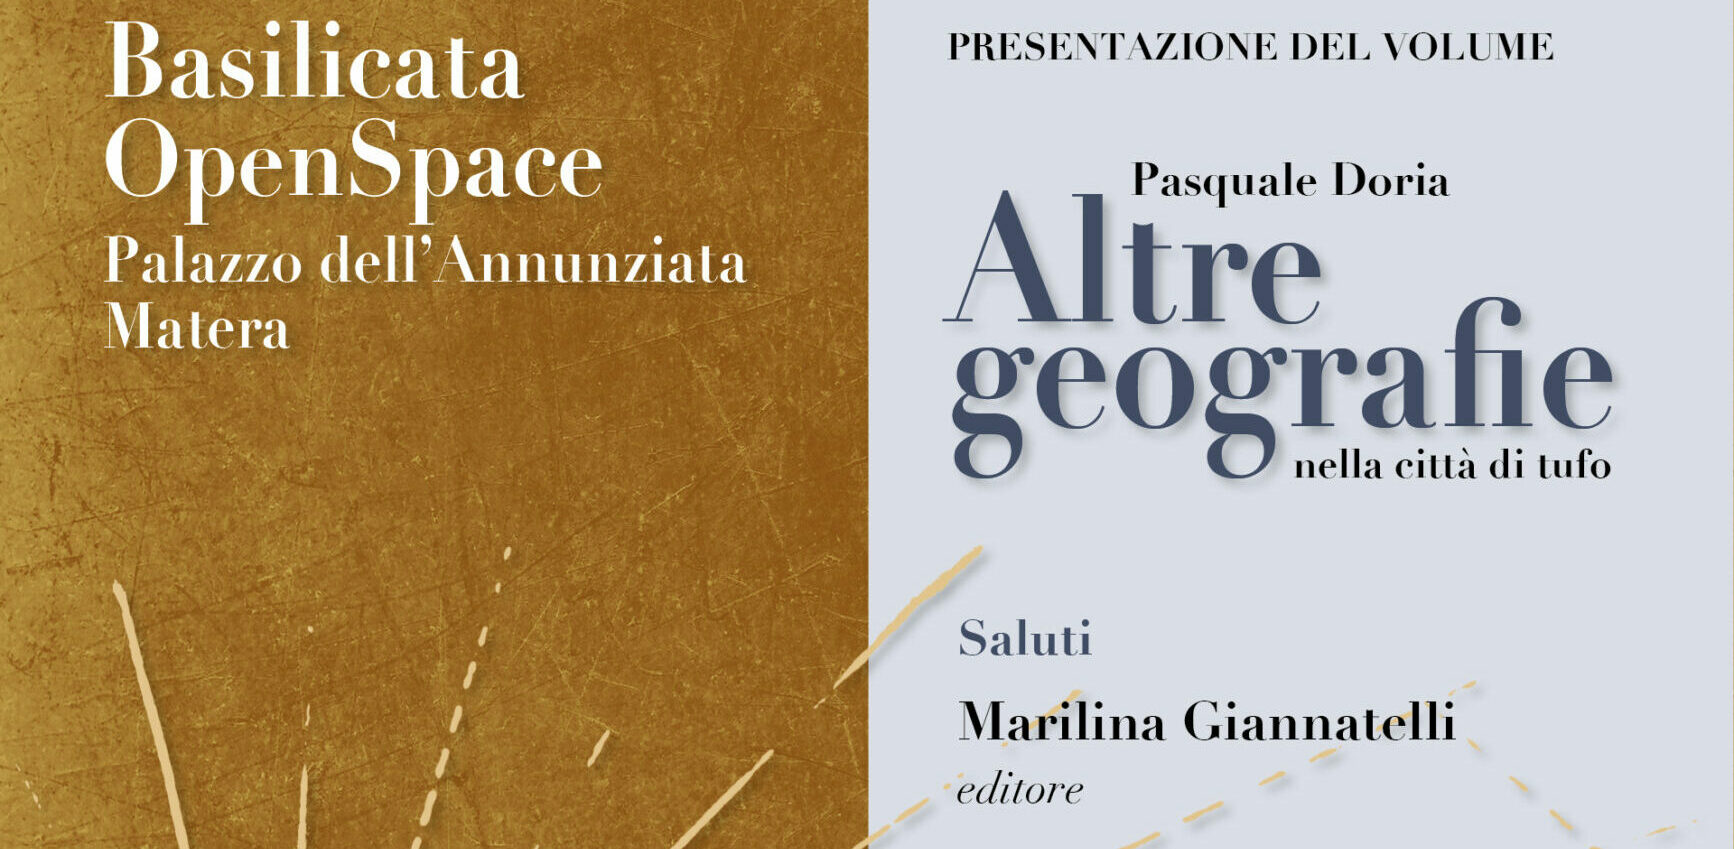 Matera, il 17 presentazione del volume “Altre geografie” di Pasquale Doria